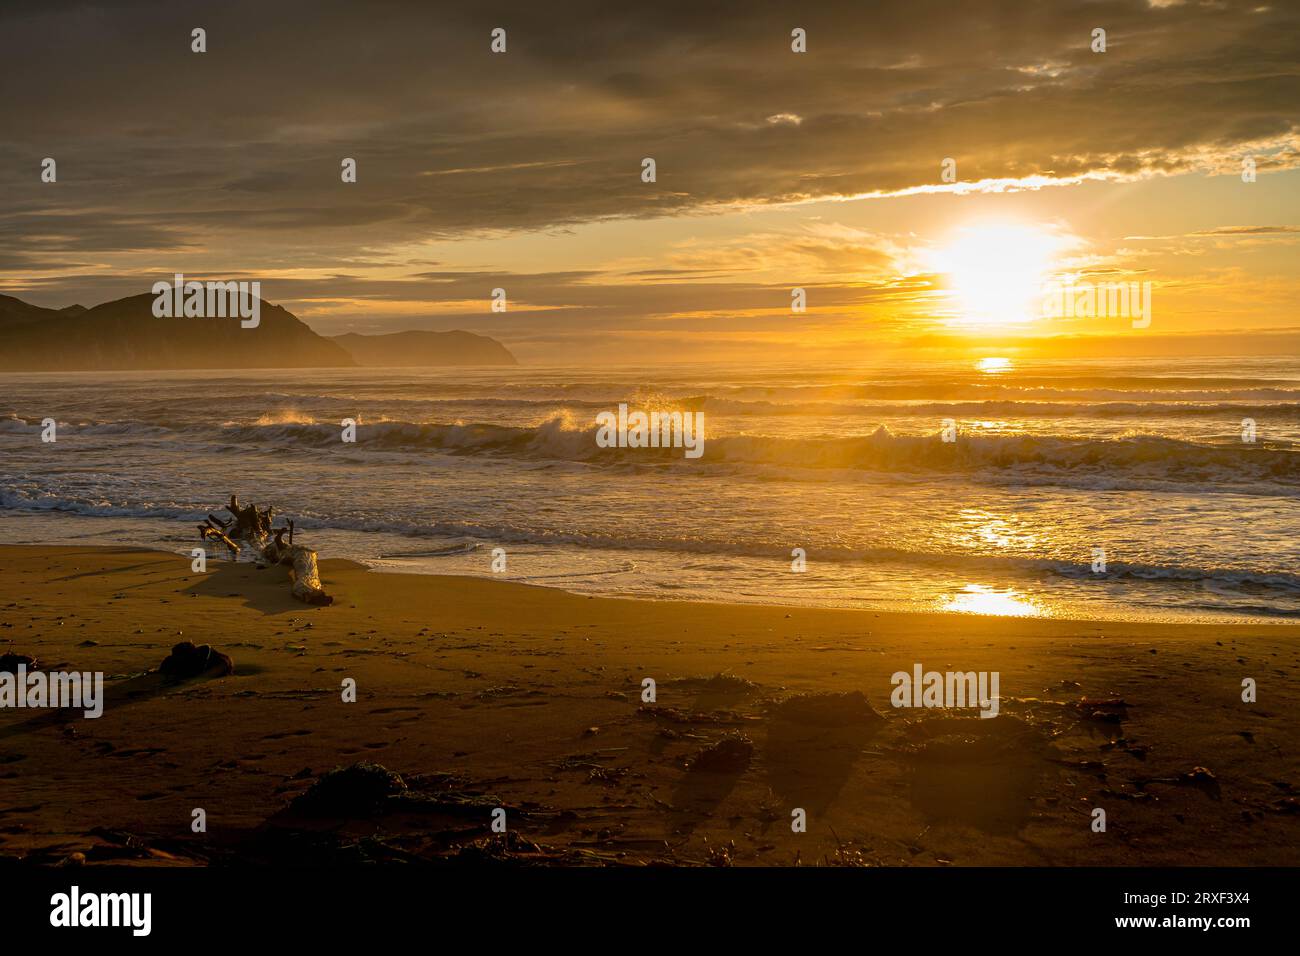 La plage de sable de la mer du Japon pendant le beau lever de soleil coloré dans la région de Primorsky dans l'extrême-Orient russe. Banque D'Images